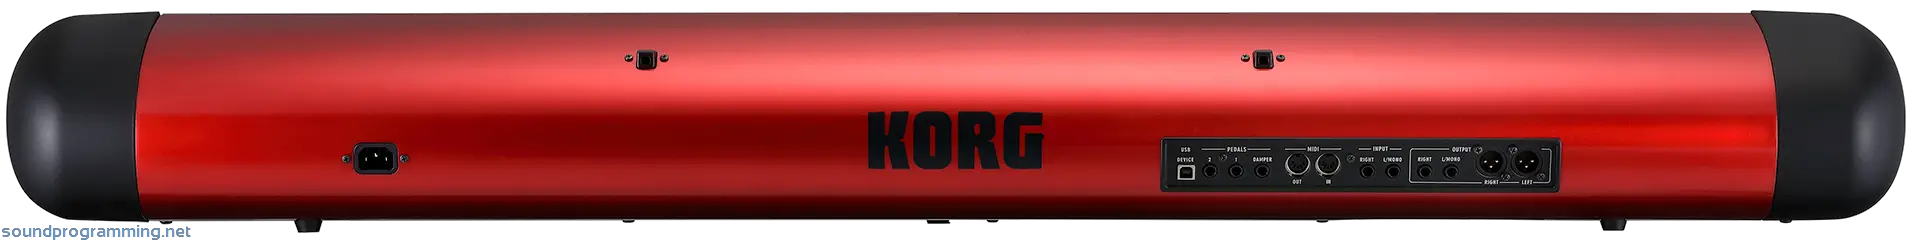 Korg SV-1 88 Red Back View